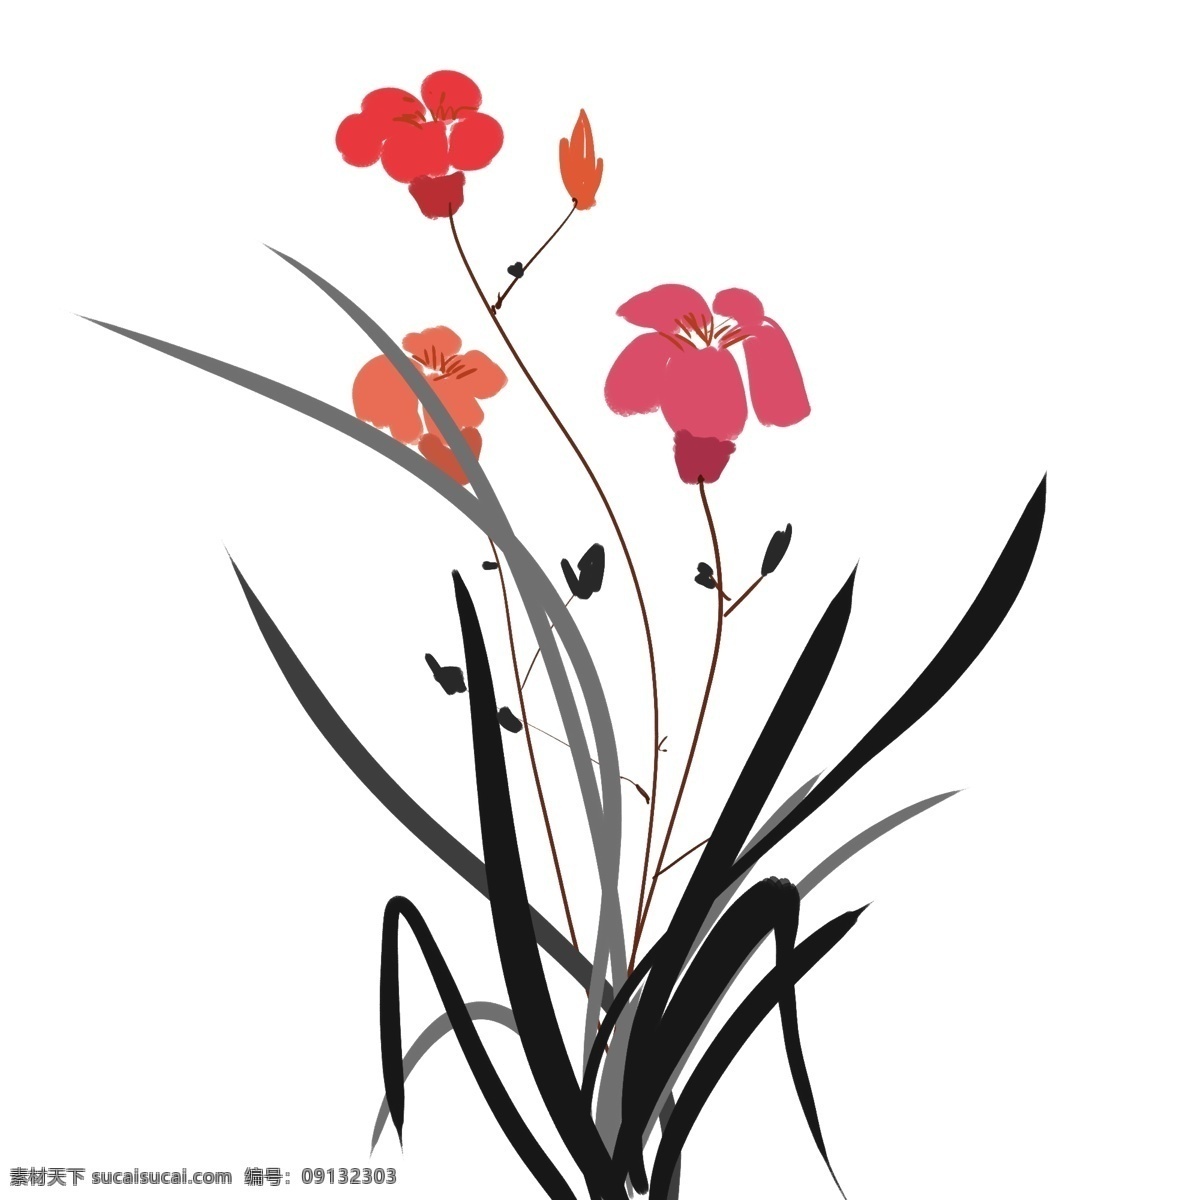 中国画 手绘 风 写意 水墨 花卉 手绘风 花朵 粉红色 简约 小清新